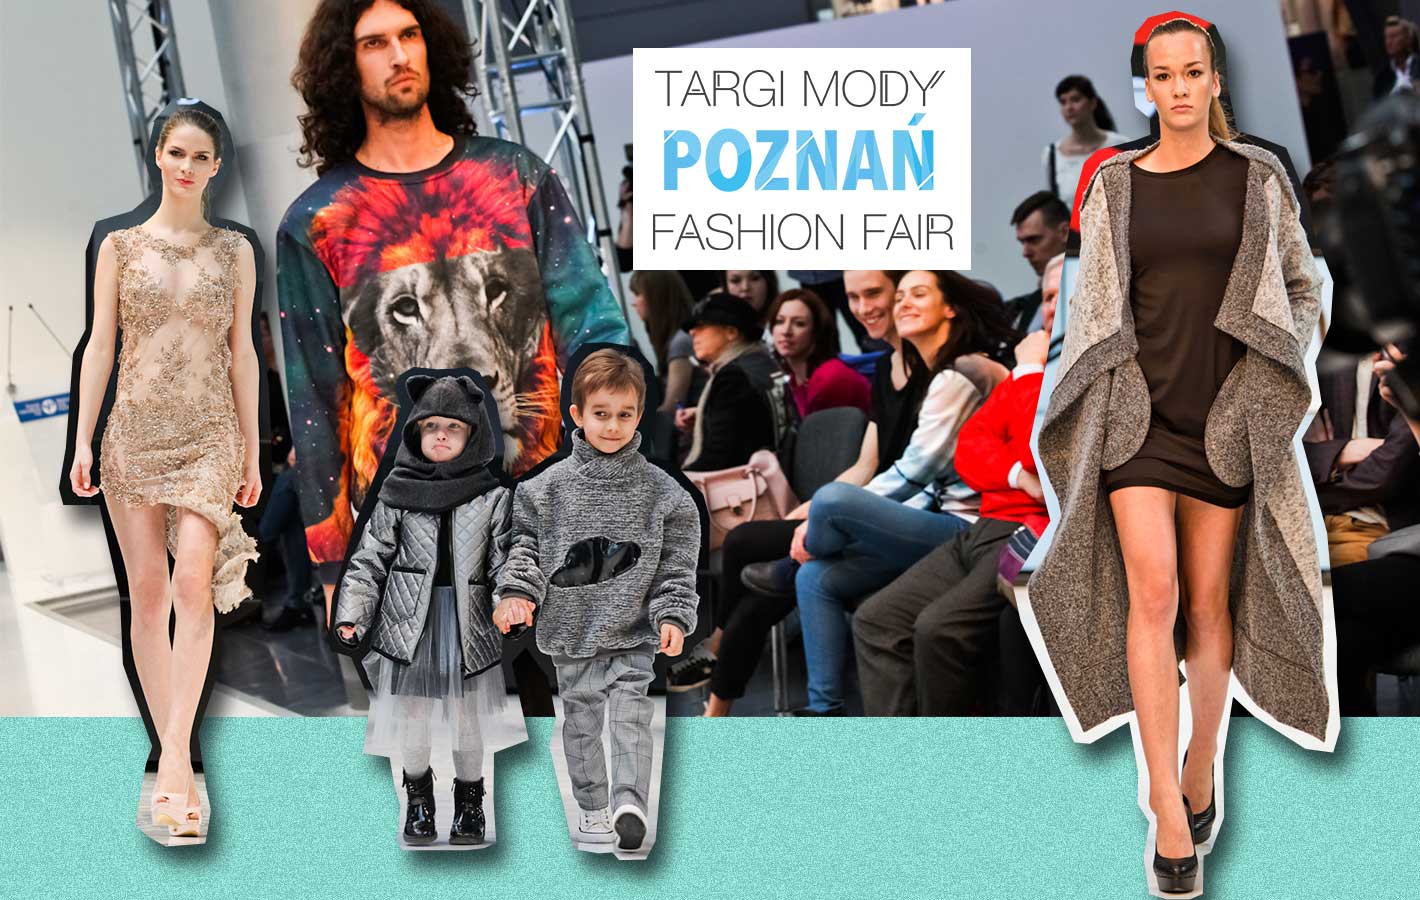 Targi Mody Poznań – poznaj modę od podszewki